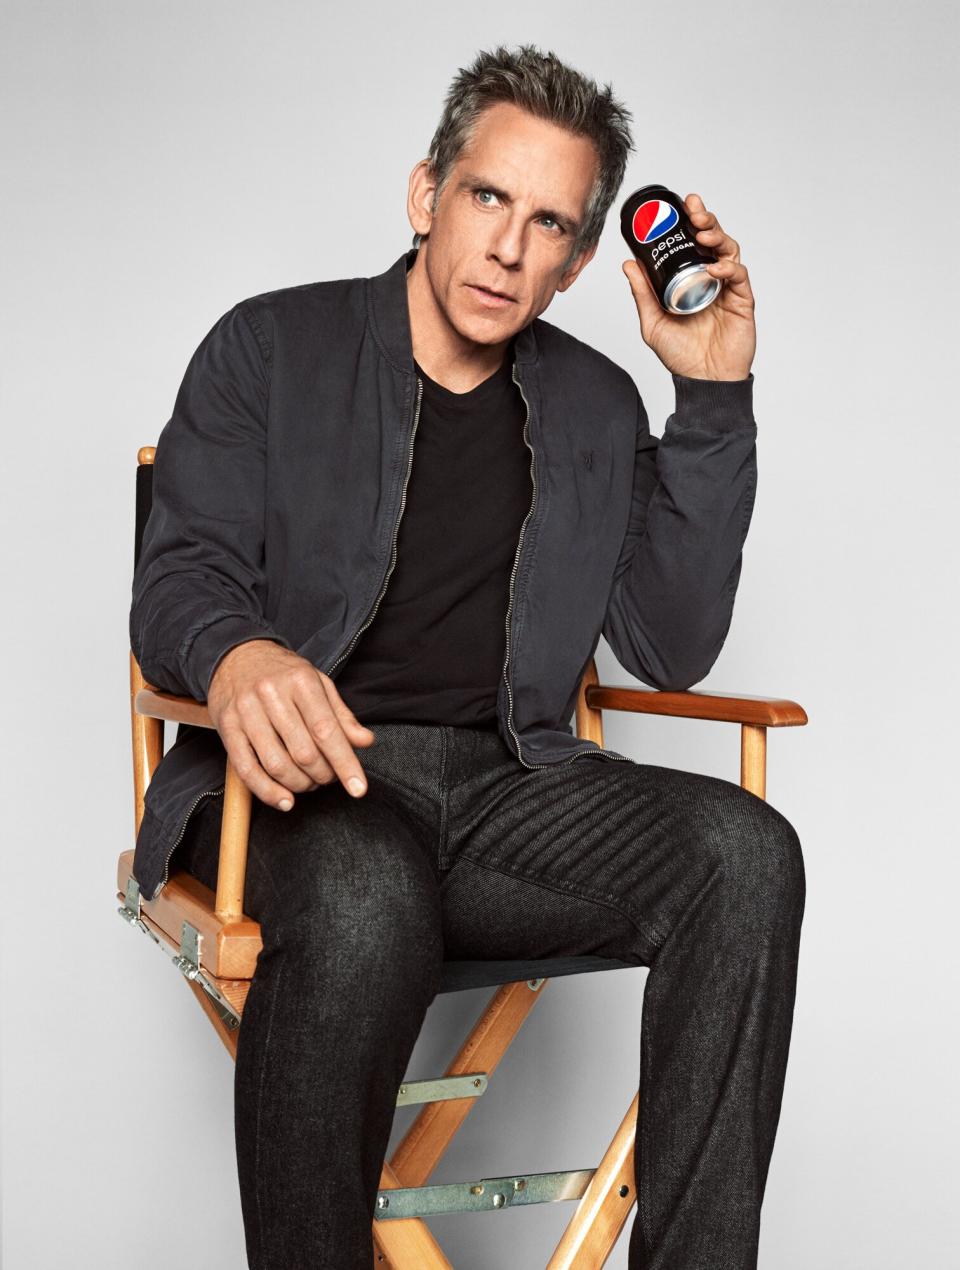 Ben Stiller on Reprising Zoolander Role for Pepsi Super Bowl Ad